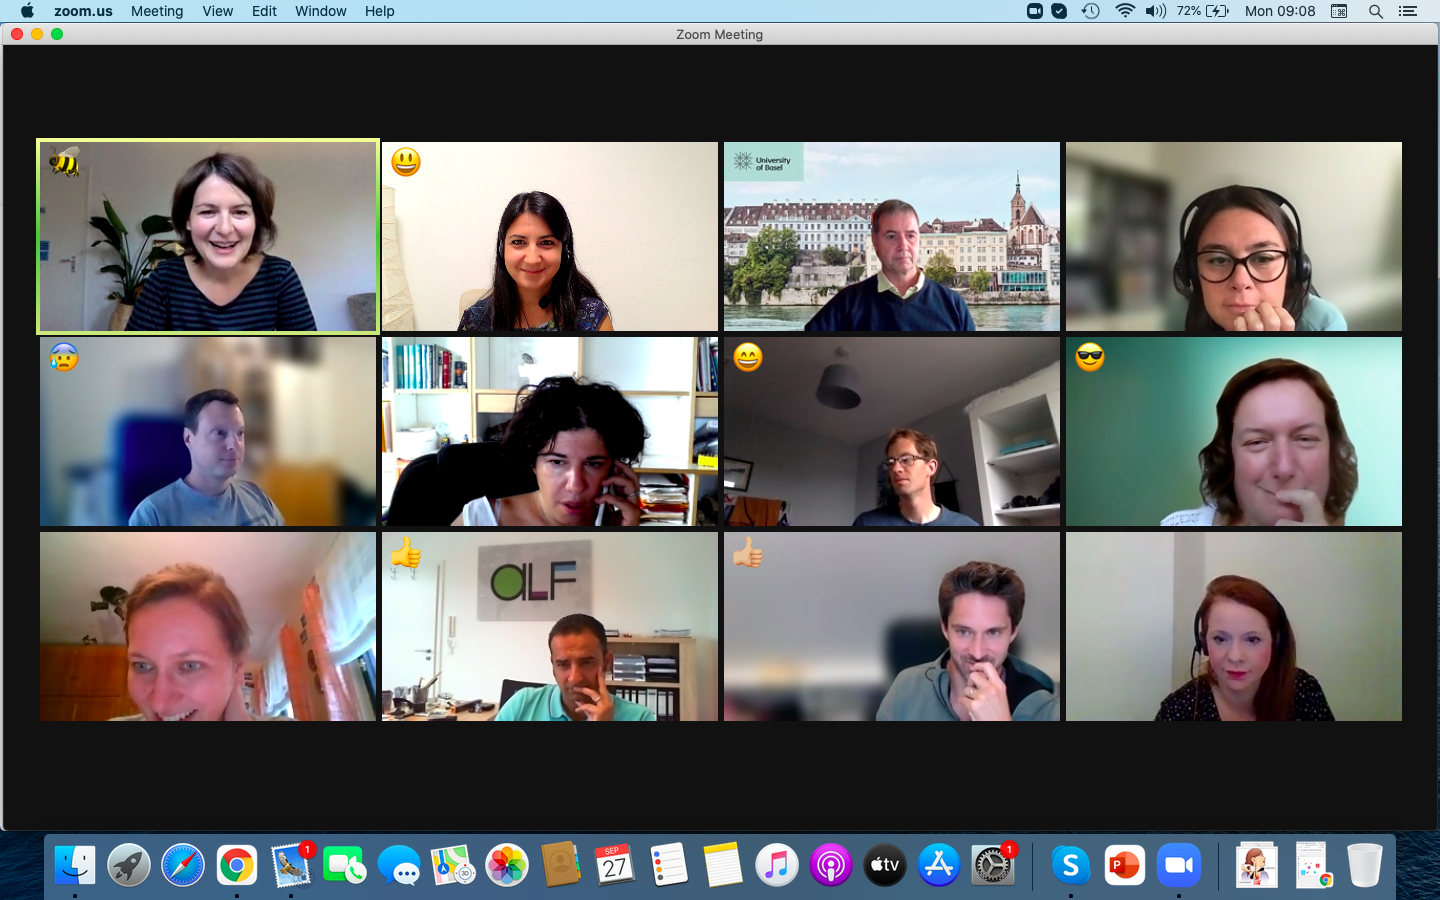 ein Screenshot von einem ZOOM Meeting, die Teilnehmer haben ihre Videokameras an und manche haben verschiedene Emojis ausgewählt